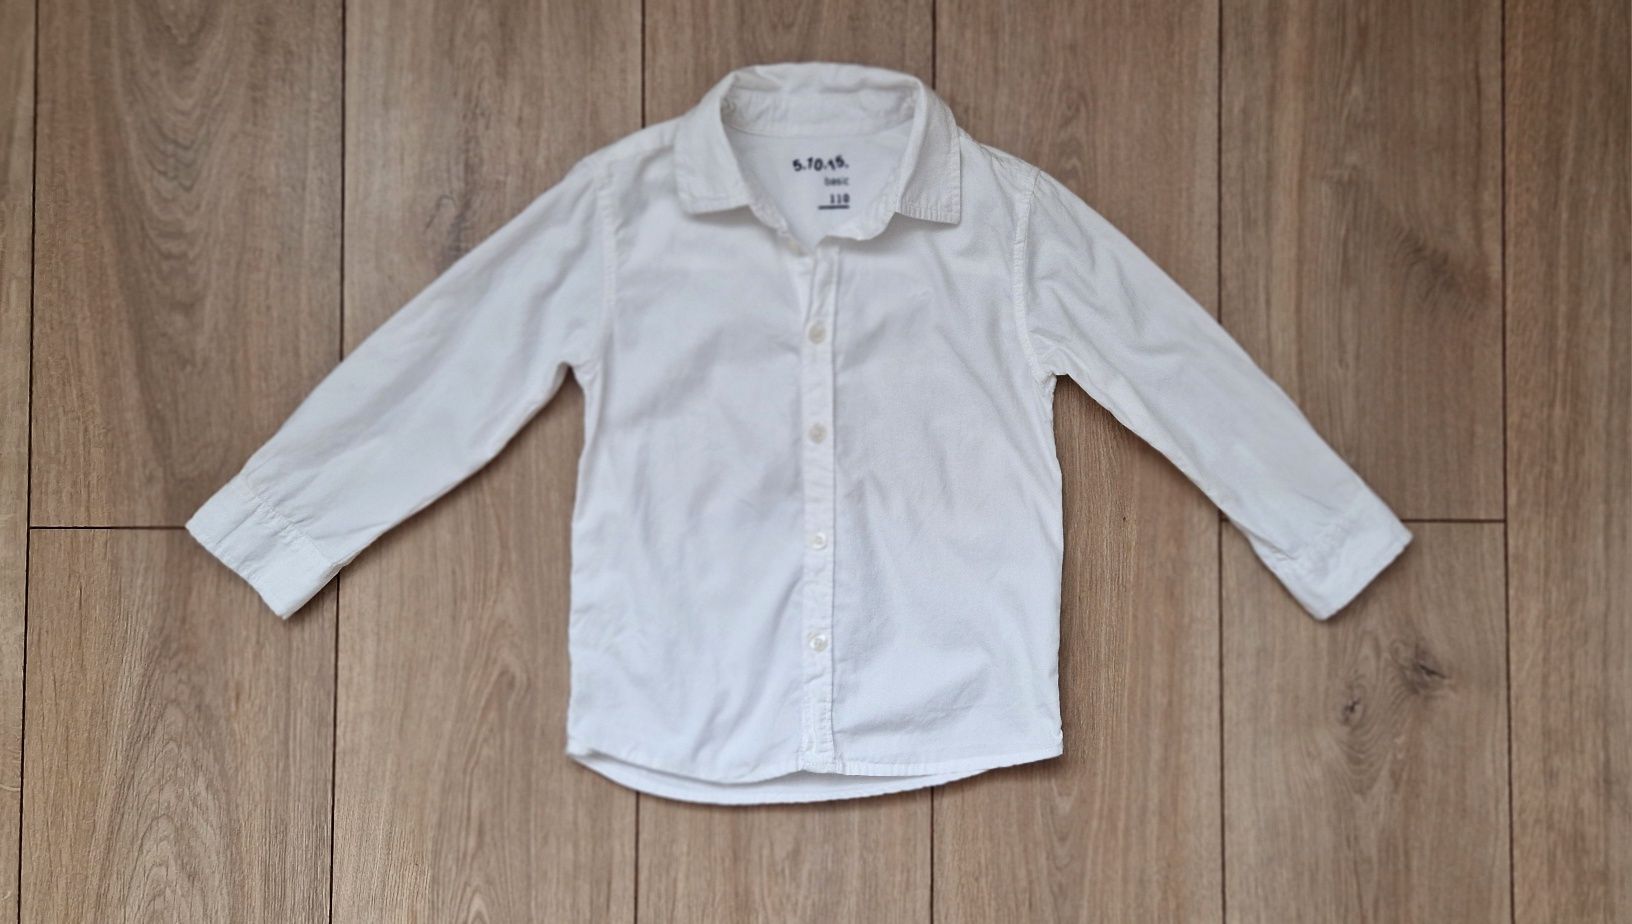 Biała koszula dla chłopca, 5.10.15, długi rękaw 110 cm